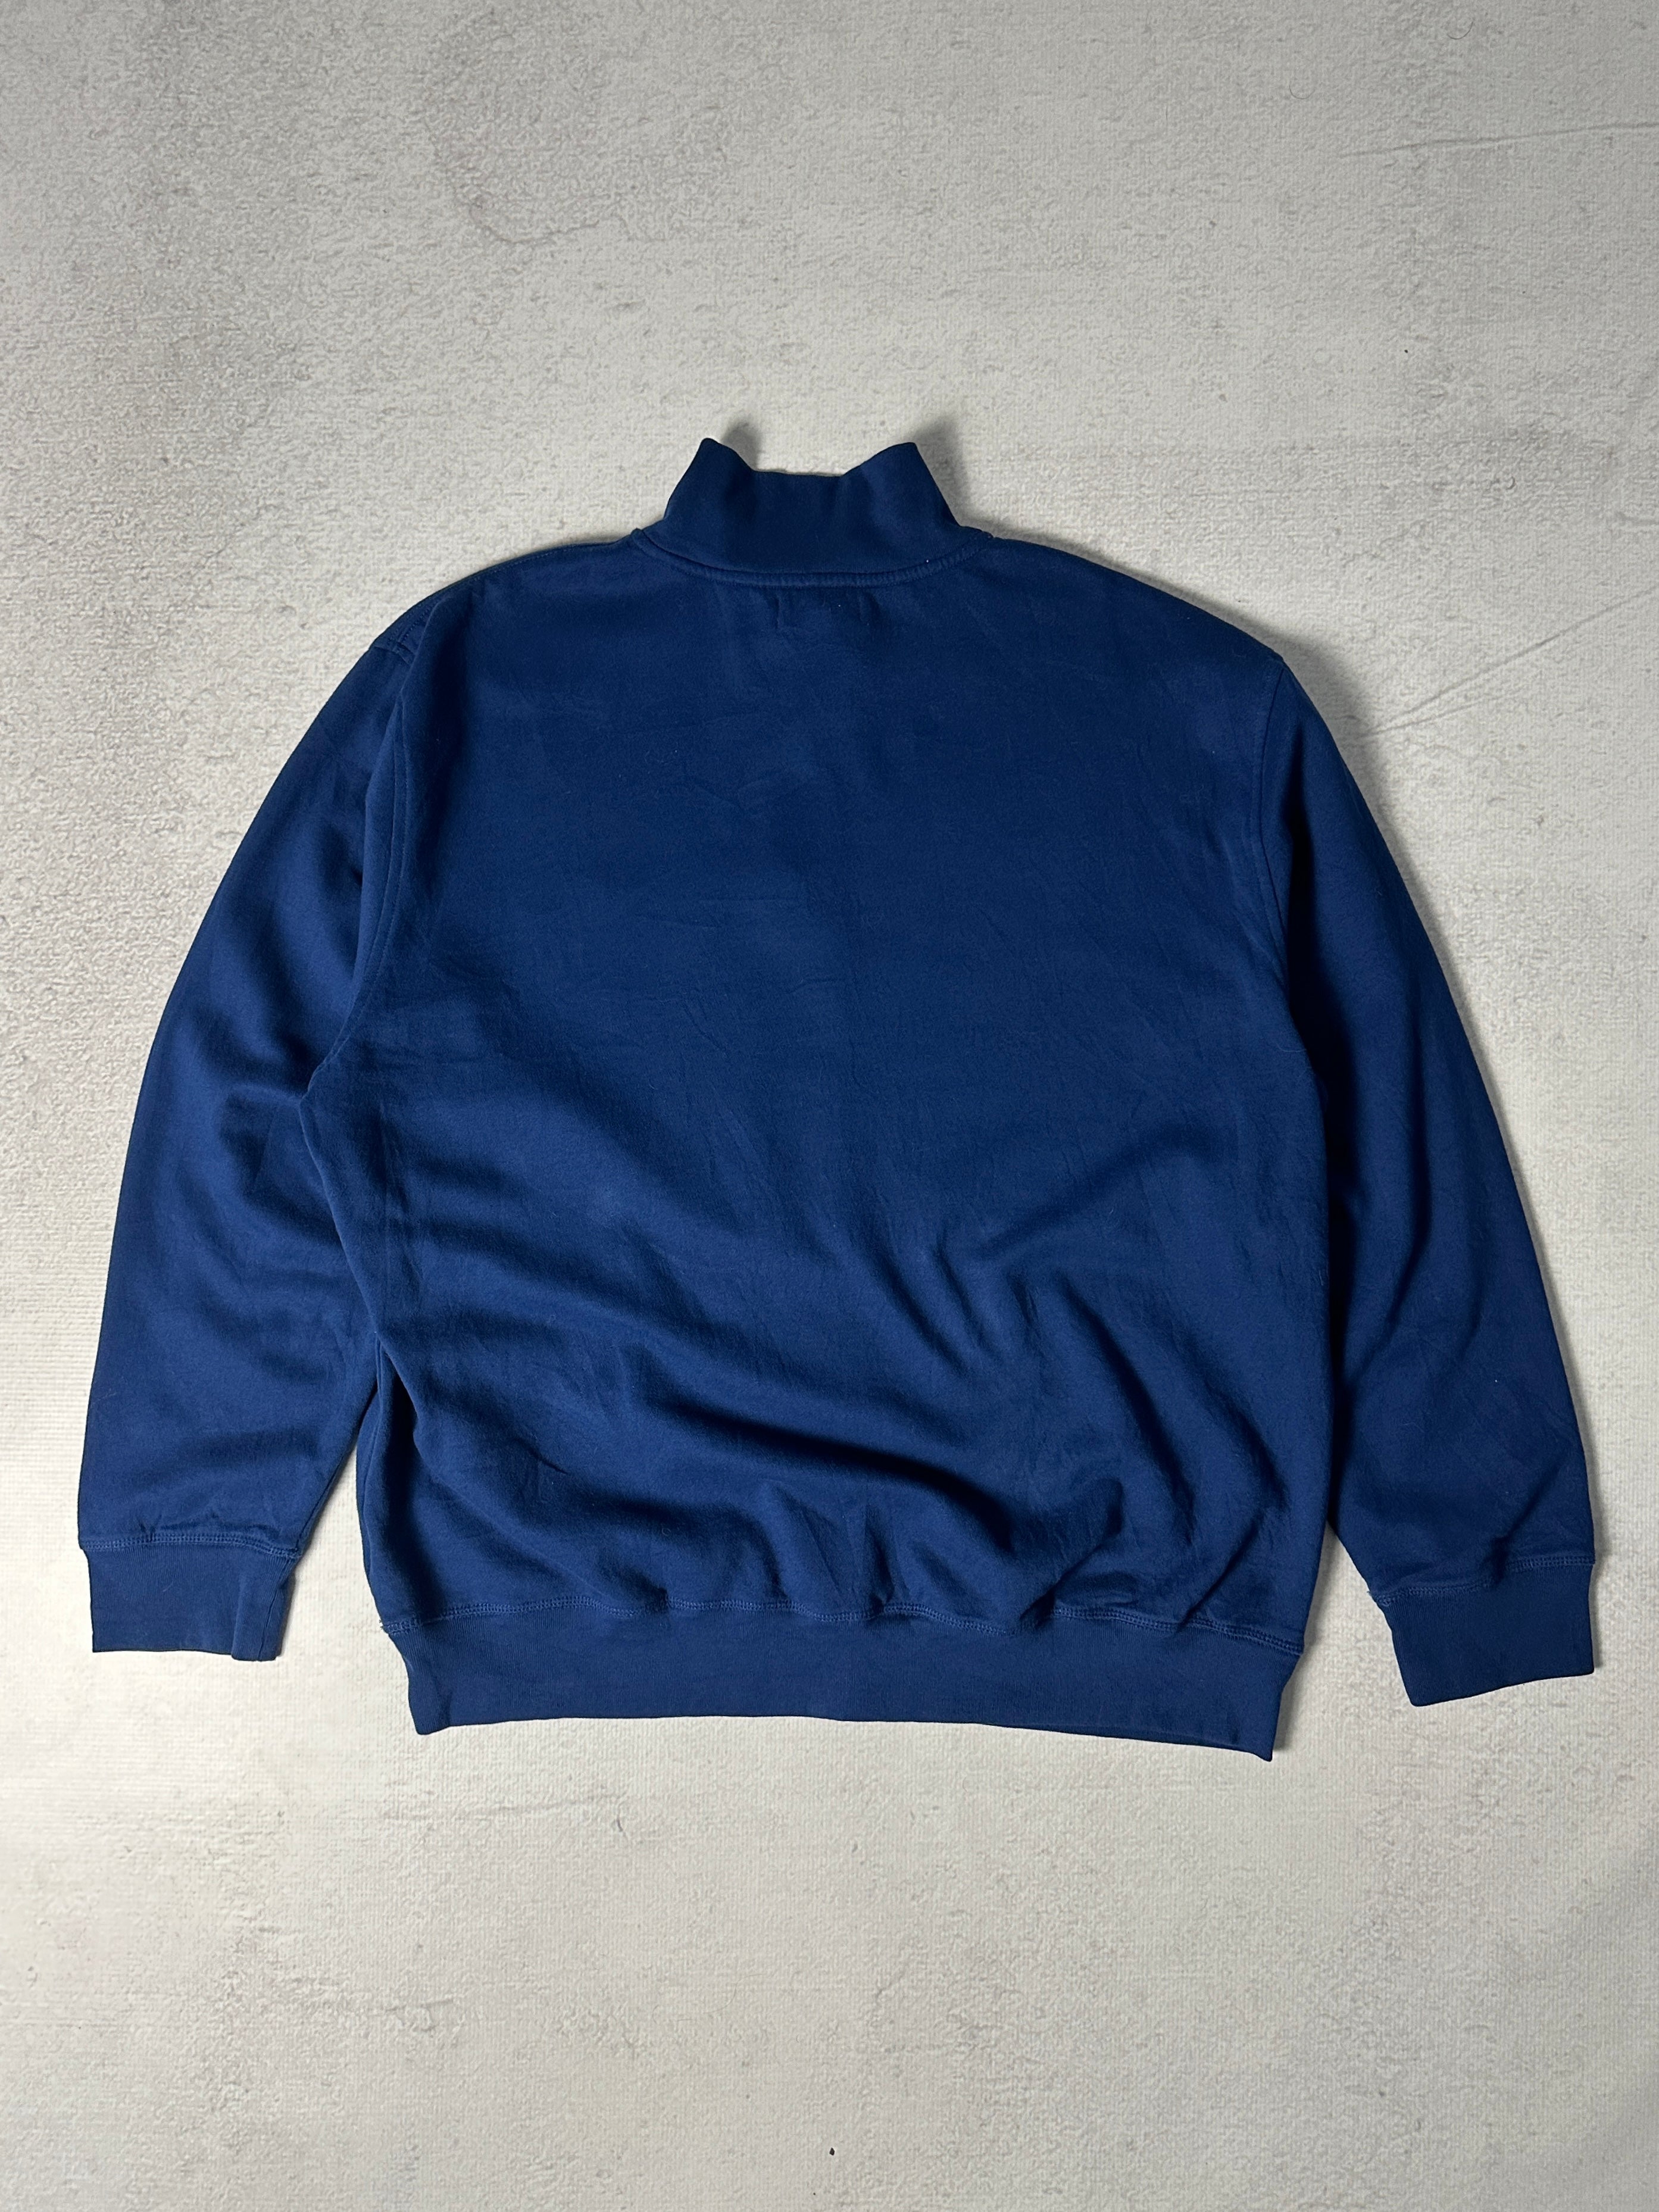 Nautica 1/4 Zip Sweatshirt - Men's 2XL